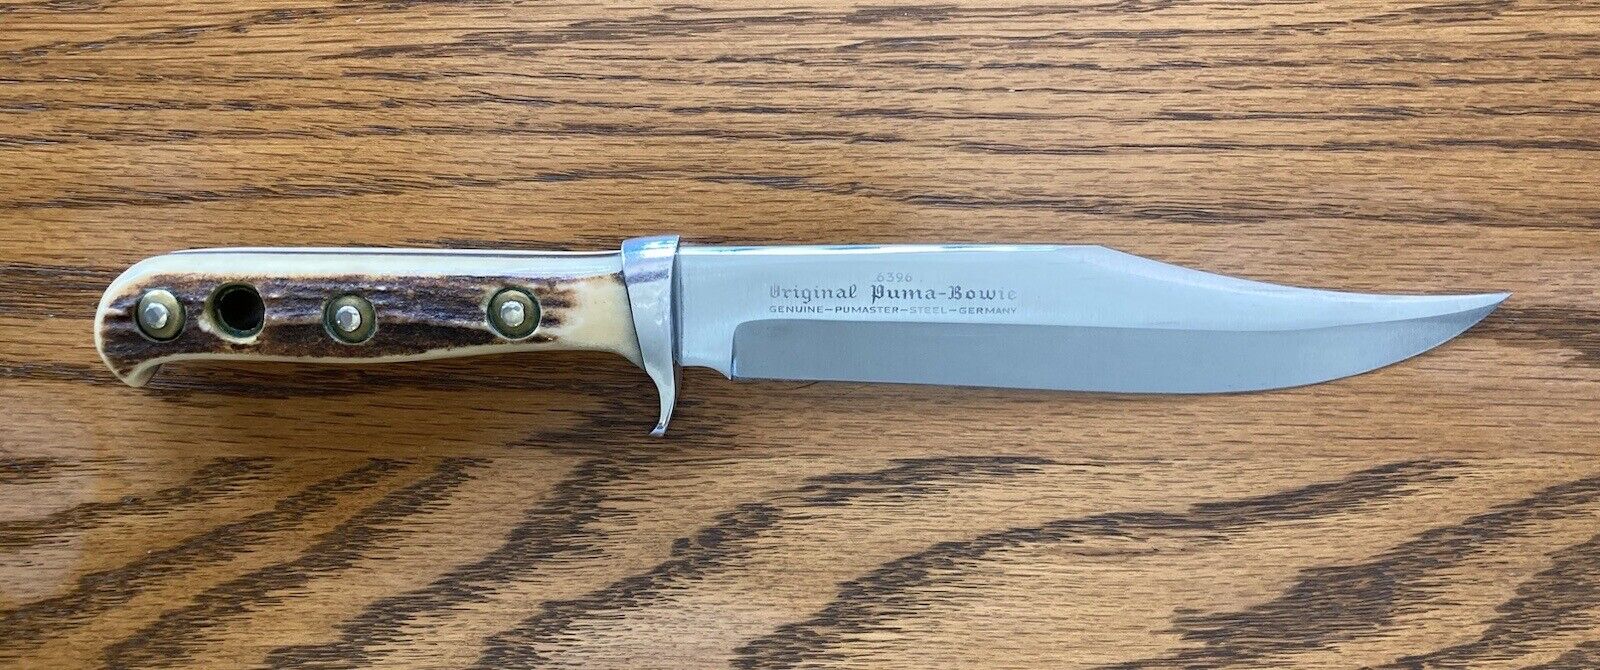 11” Original Puma Bowie Knife 6396 w/sheath- Fixed Blade